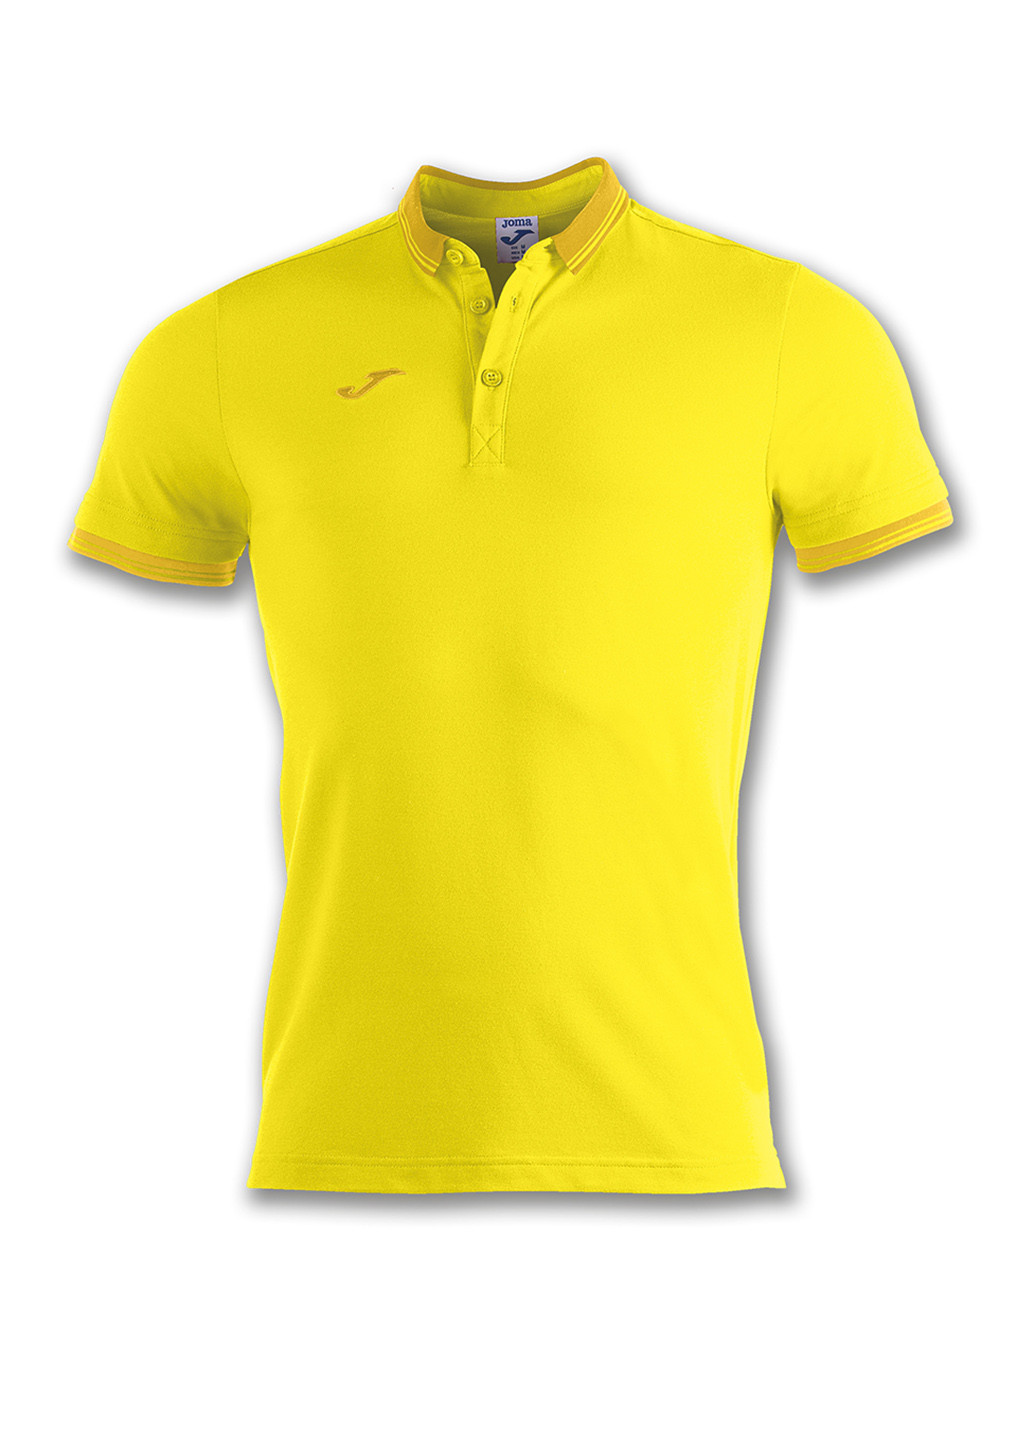 Желтая футболка-поло для мужчин Joma